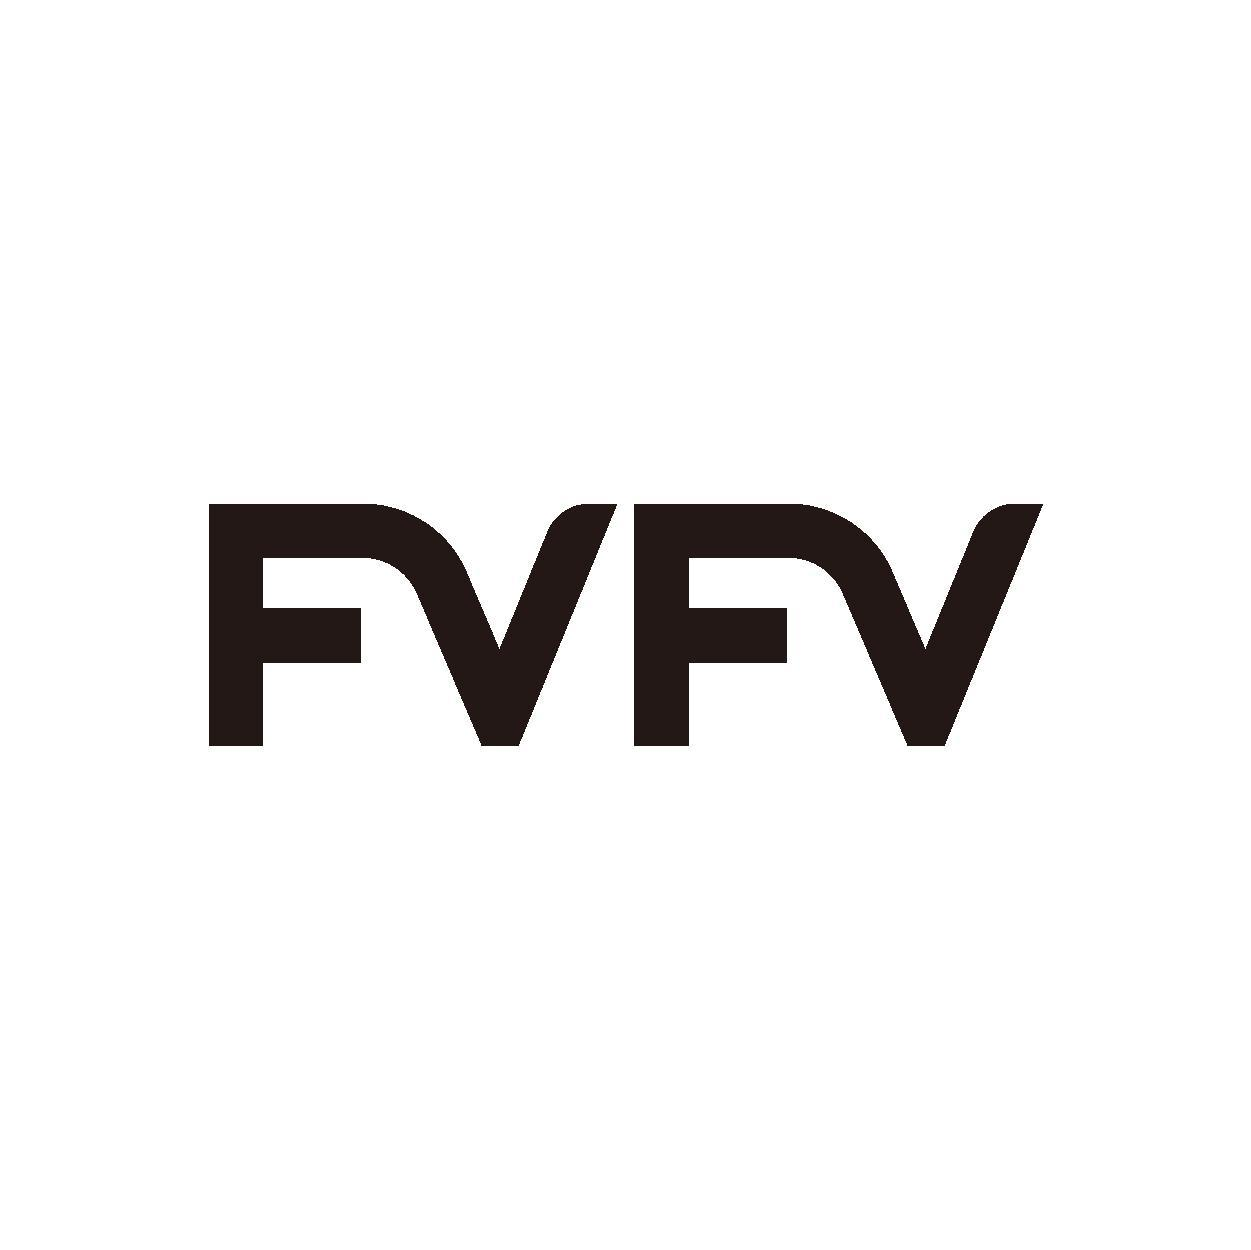 转让商标-FVFV